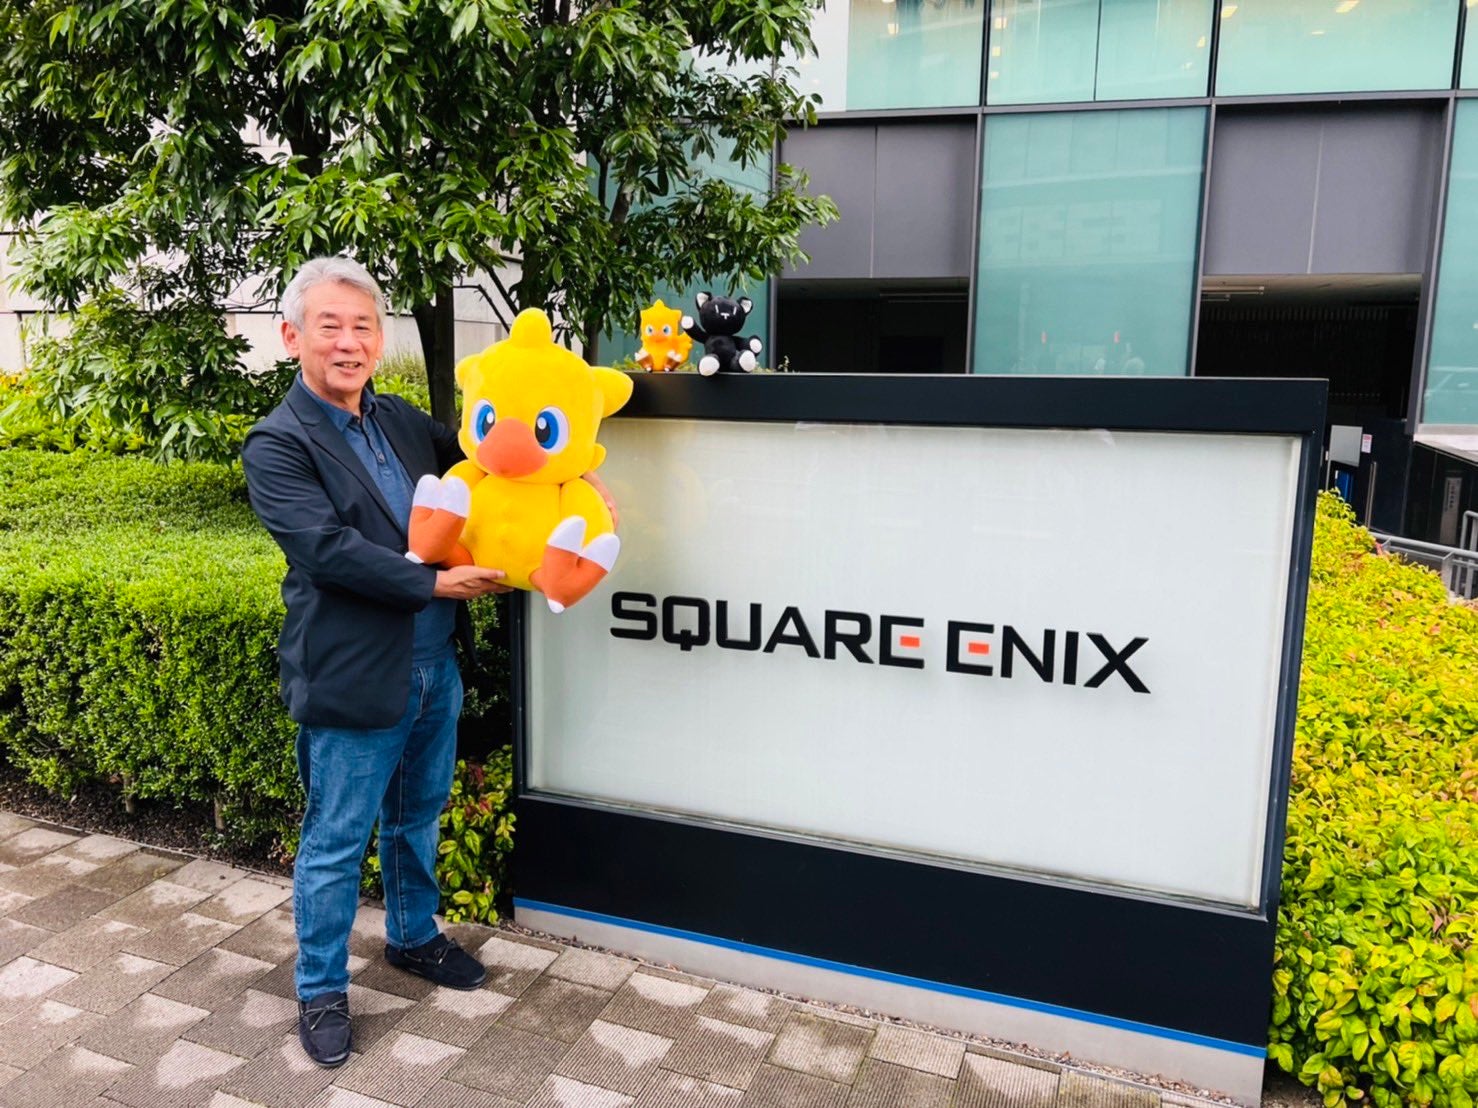 Immagine di Kingdom Hearts: il co-creatore Shinji Hashimoto va in pensione dopo 28 anni in Square-Enix